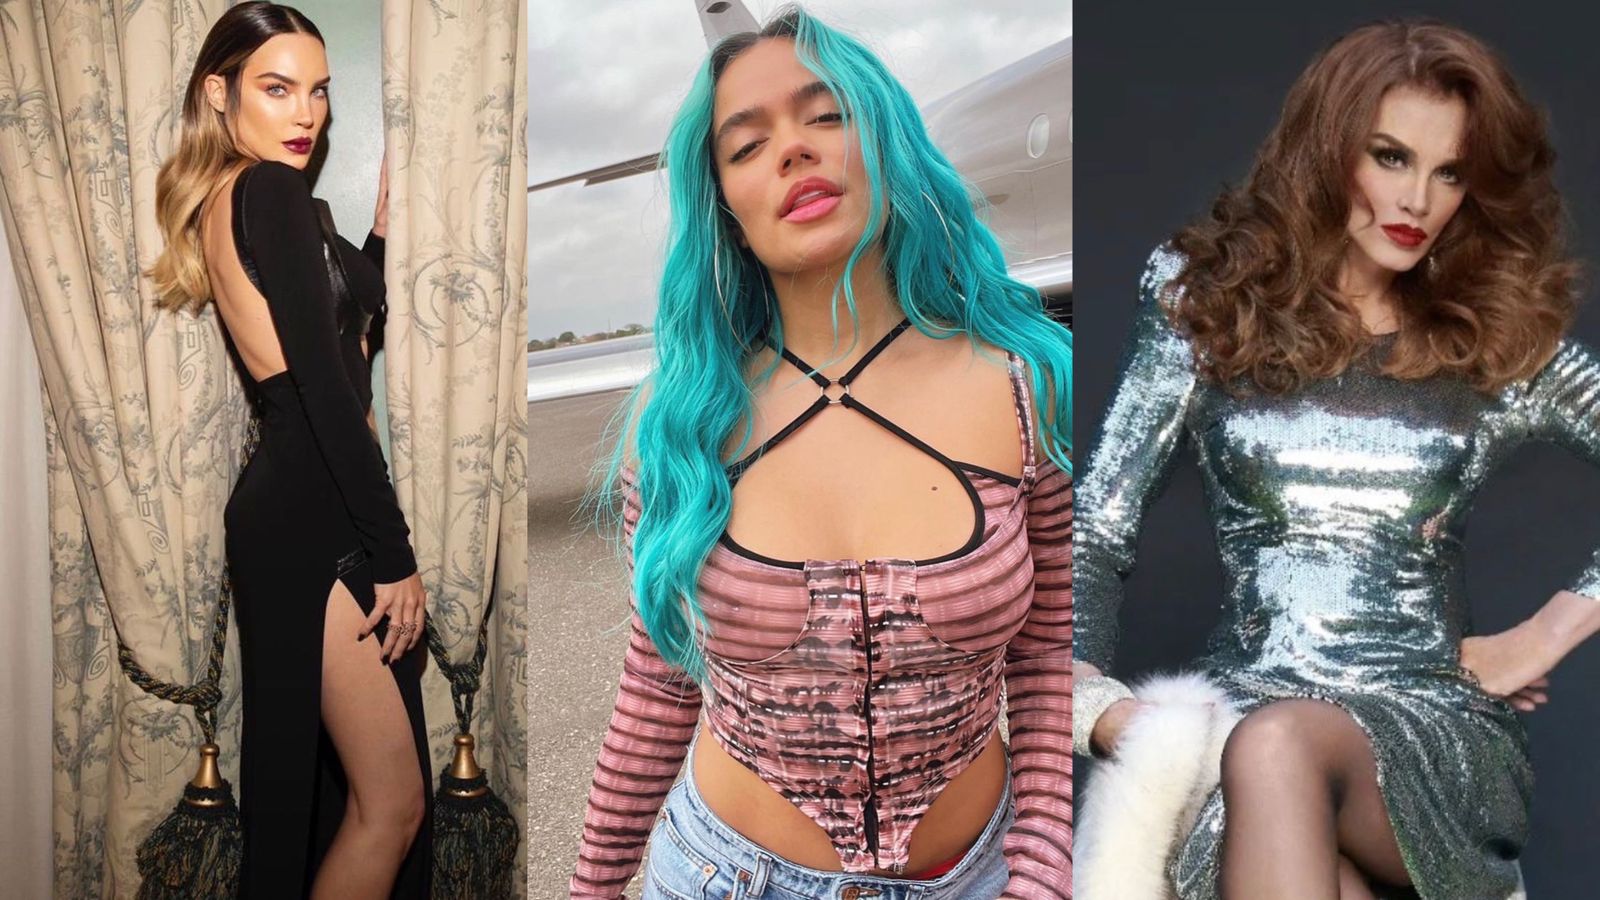 La cantante fue comparada con Belinda y Lucía Méndez 
(Fotos: Instagram/@belindapop/@karolg/@luciamendezof)